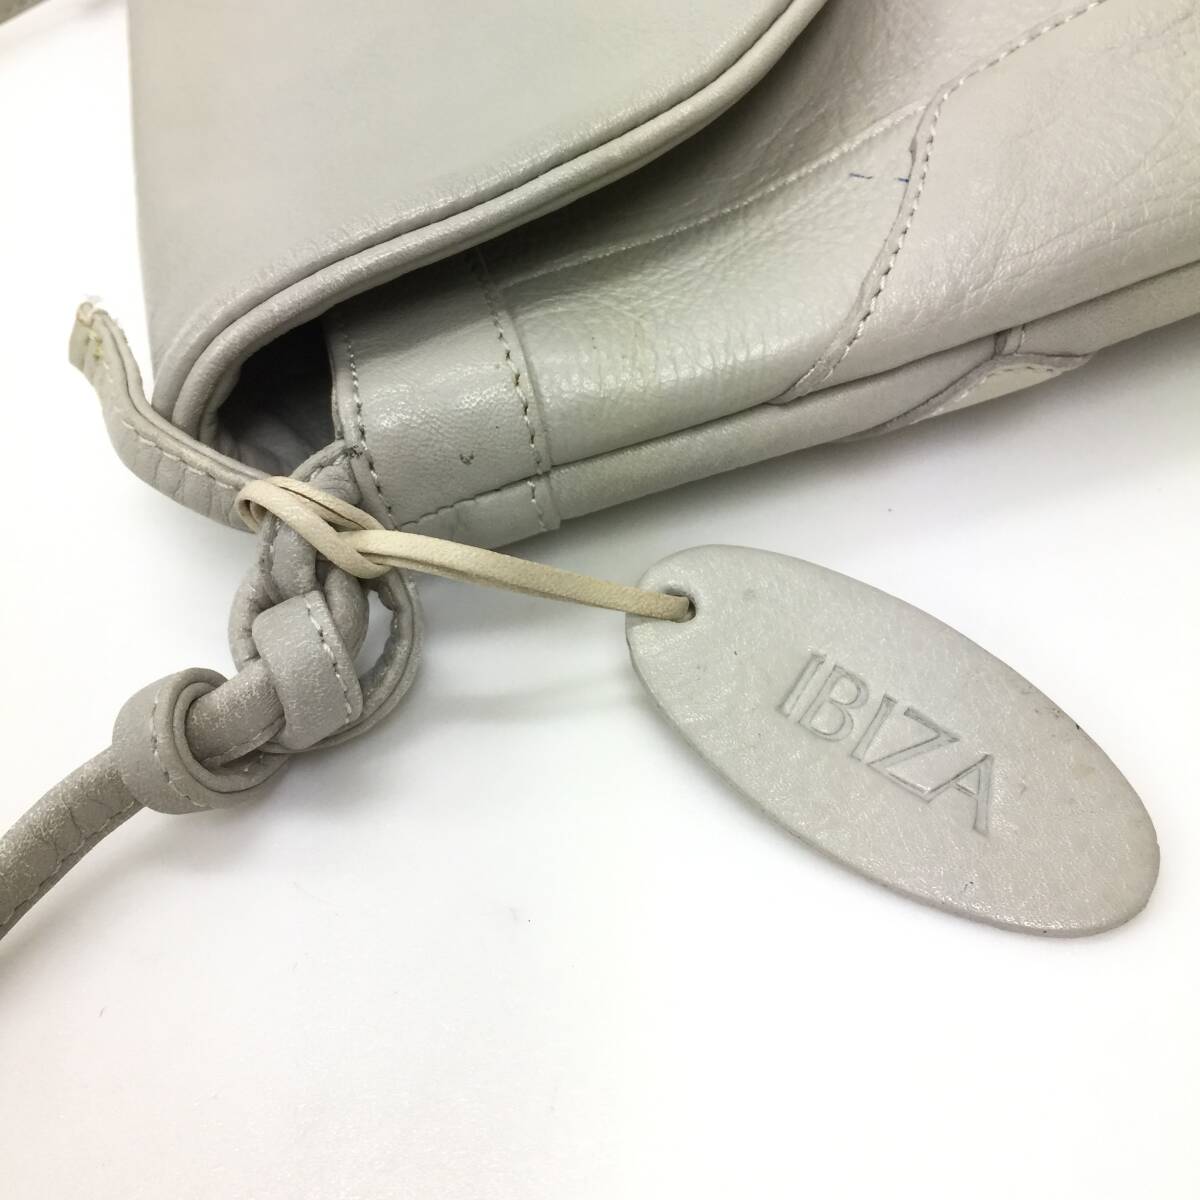 112 IBIZA イビザ レザー ショルダーバッグ ポシェット タッセル 縦型 本革 皮革 鞄 バッグ かばん レディース ライトグレー系の画像7